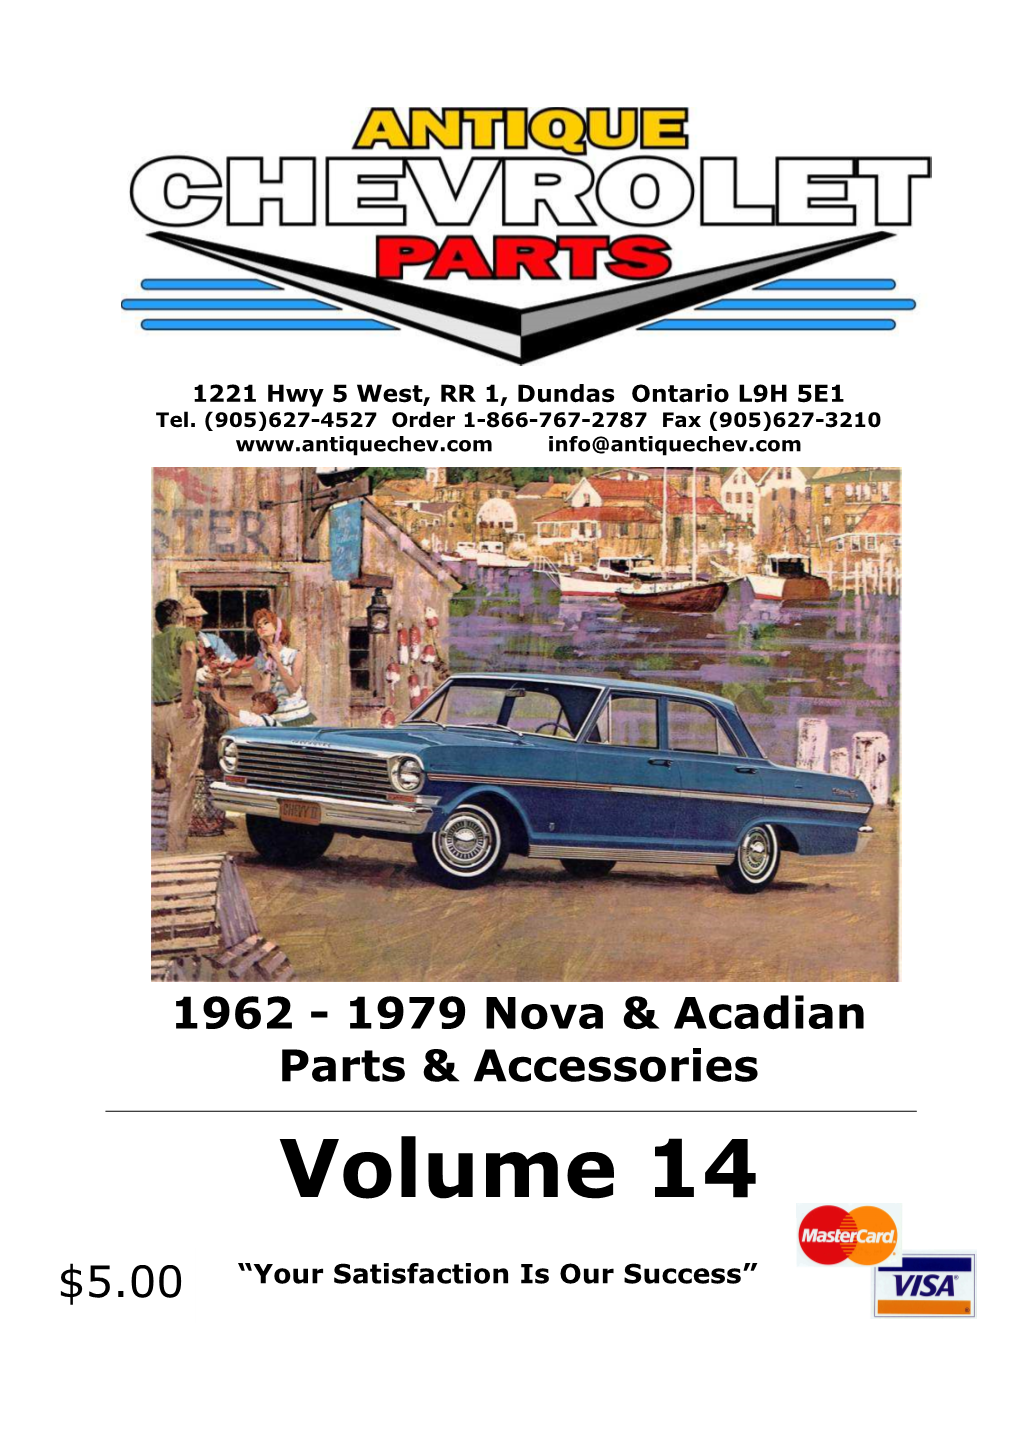 1962 - 1979 Nova & Acadian Parts & Accessories